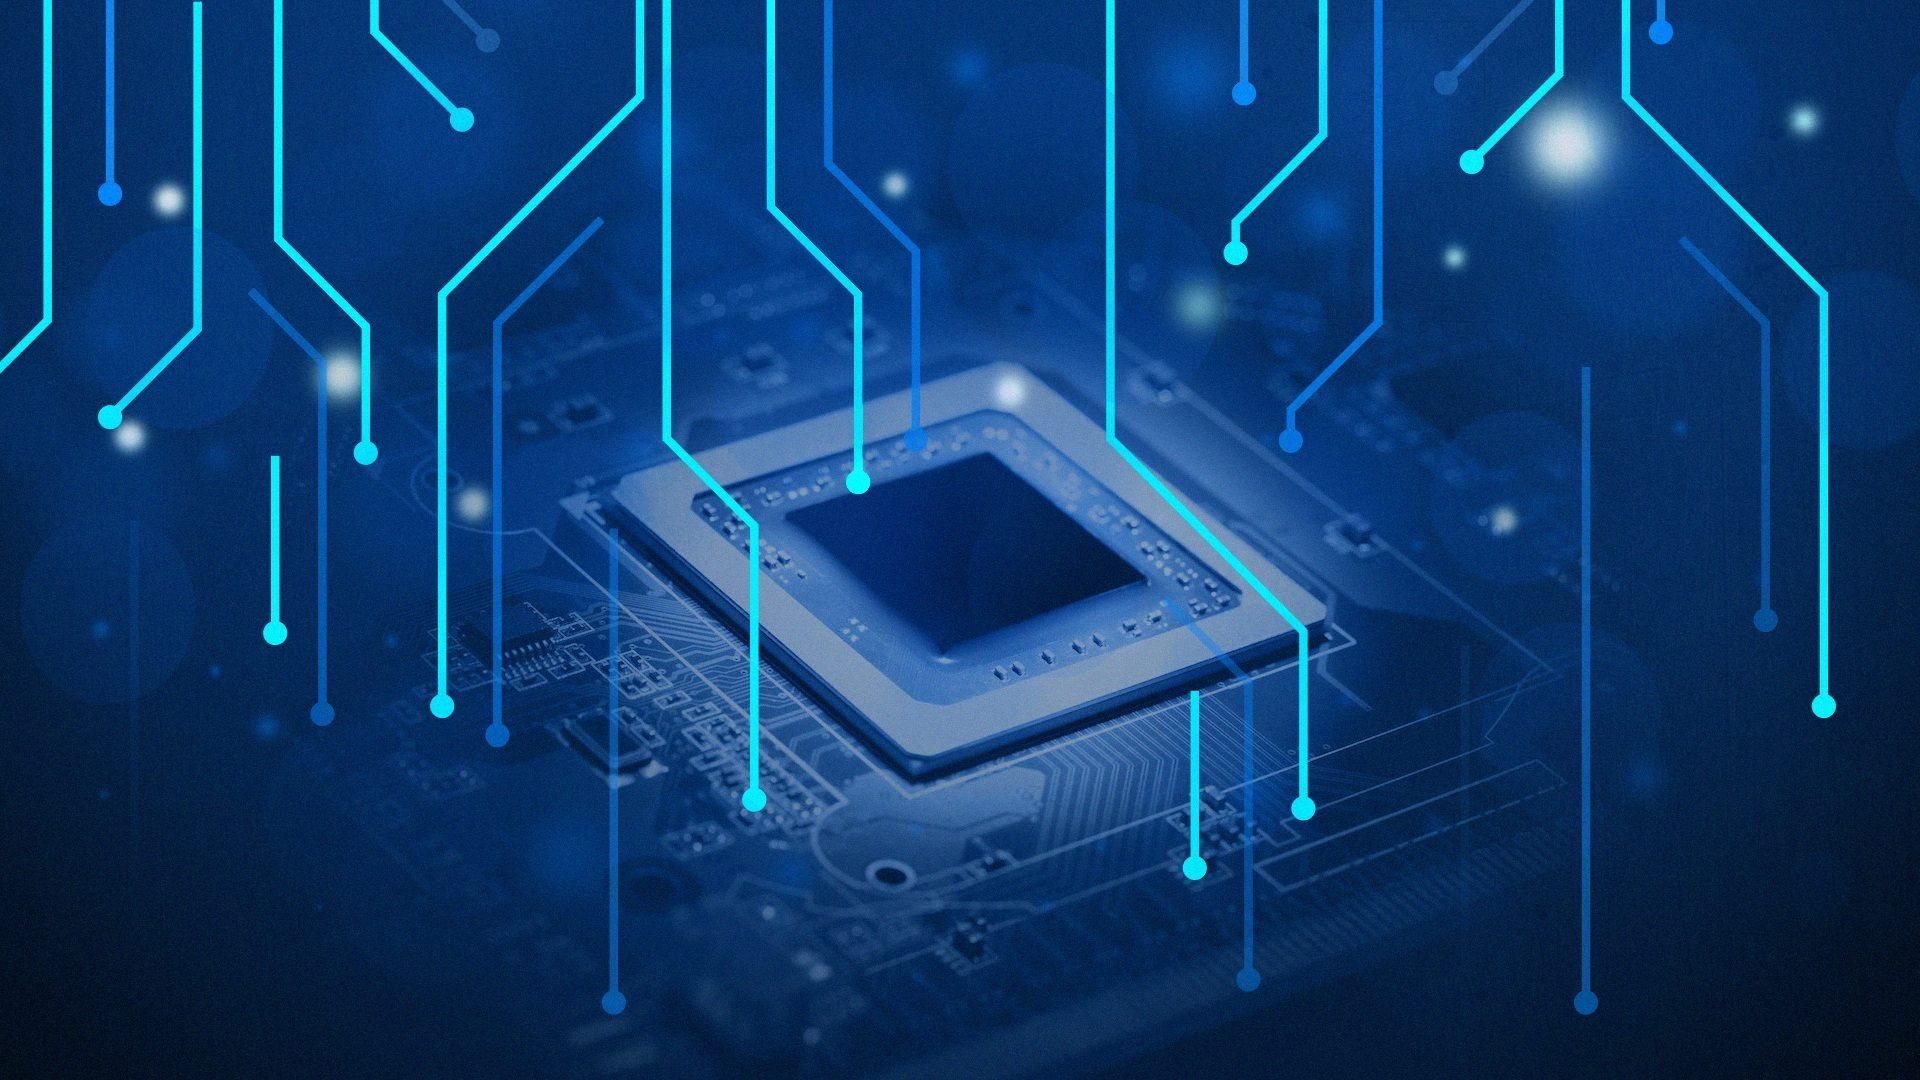 Процесори Intel Core i9-9990XE надійшли у продаж: ціна та особливості